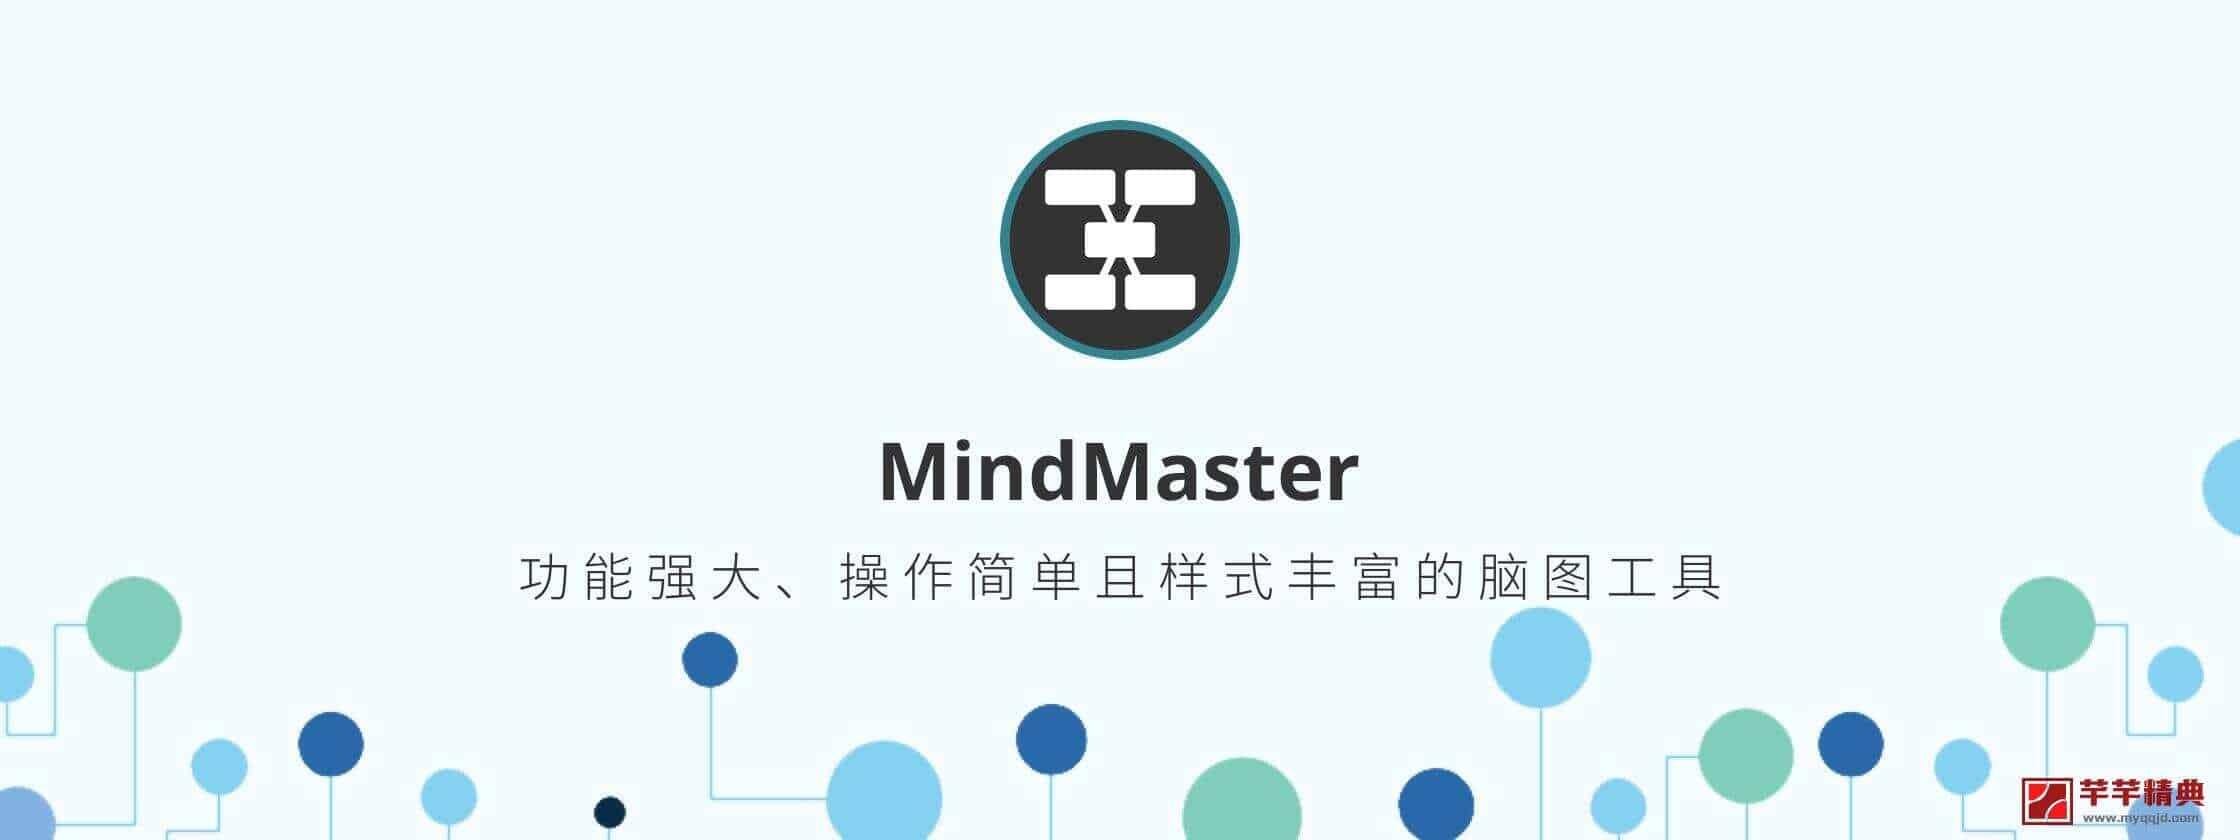 亿图思维导图 MindMaster Pro 限时赠送正版授权激活码 『活动截止：8月13号』